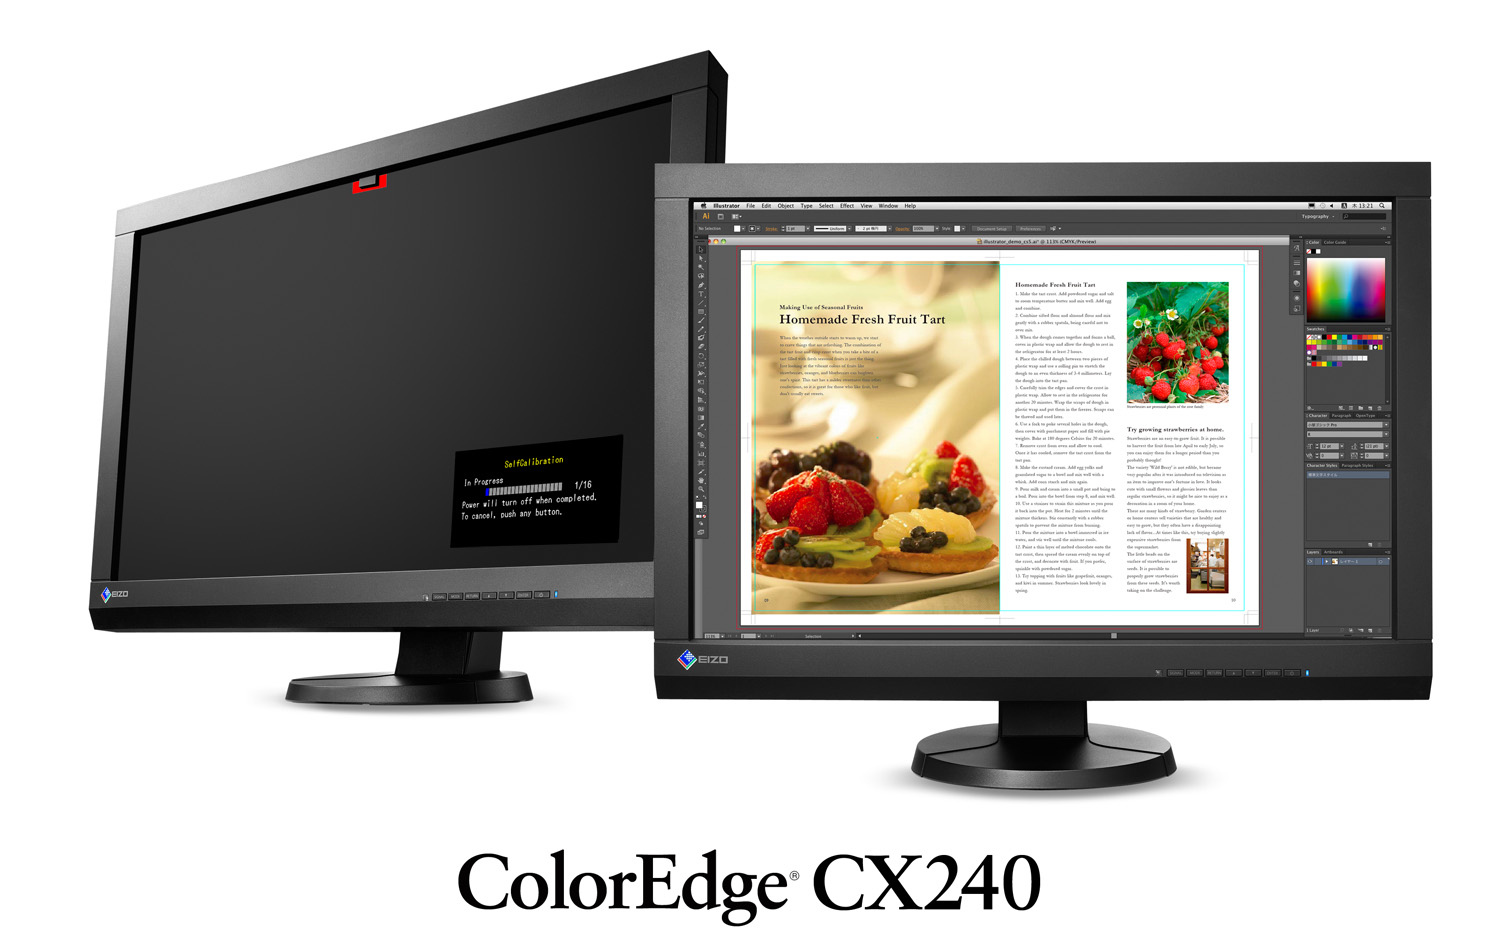 ColorEdge CX240